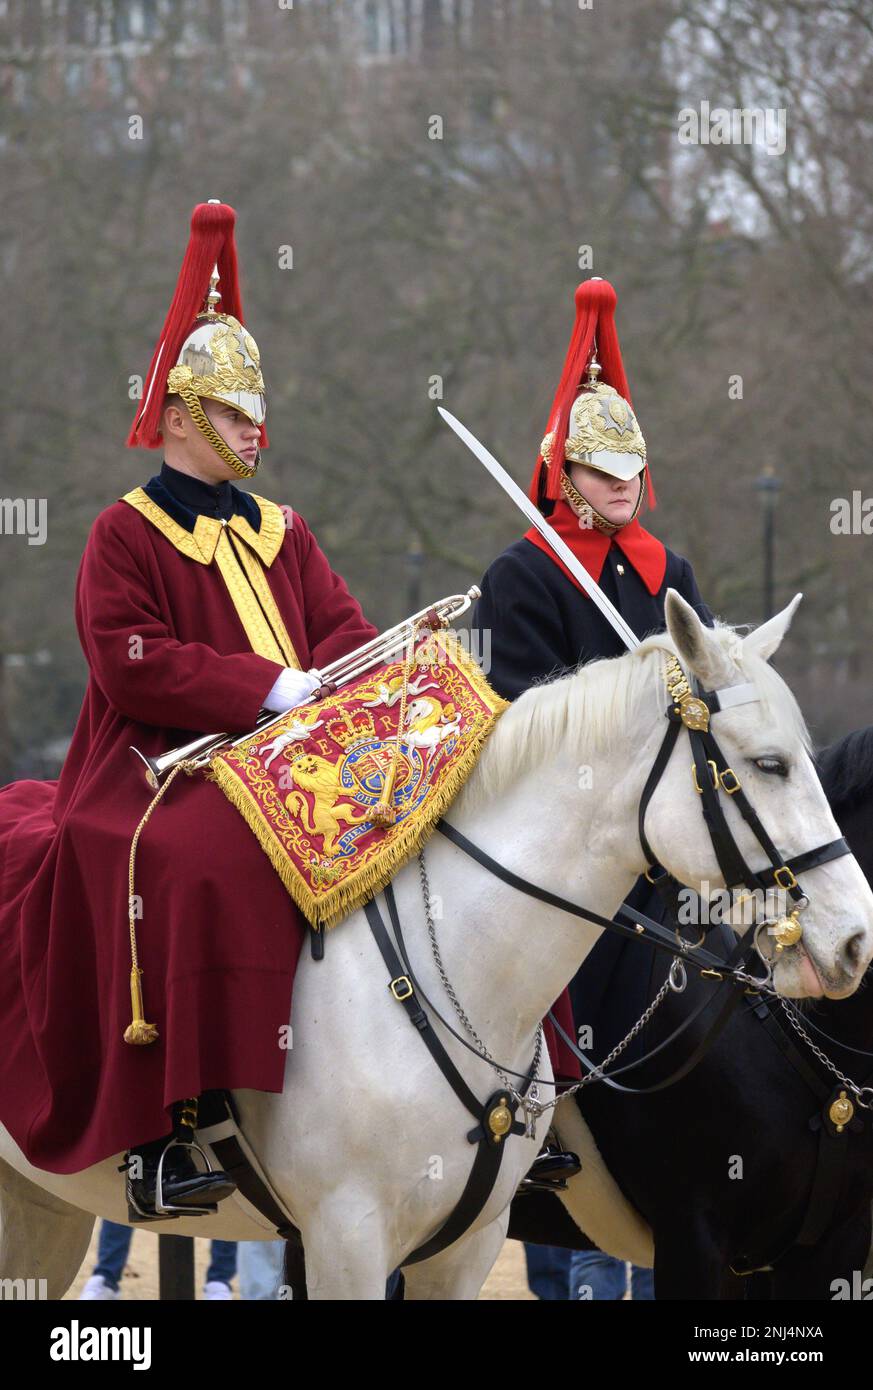 Londres, Angleterre, Royaume-Uni. La relève quotidienne de la garde sur la parade des gardes à cheval, Westminster. Trompettiste Blues and Royals (plume rouge) avec bannière Banque D'Images